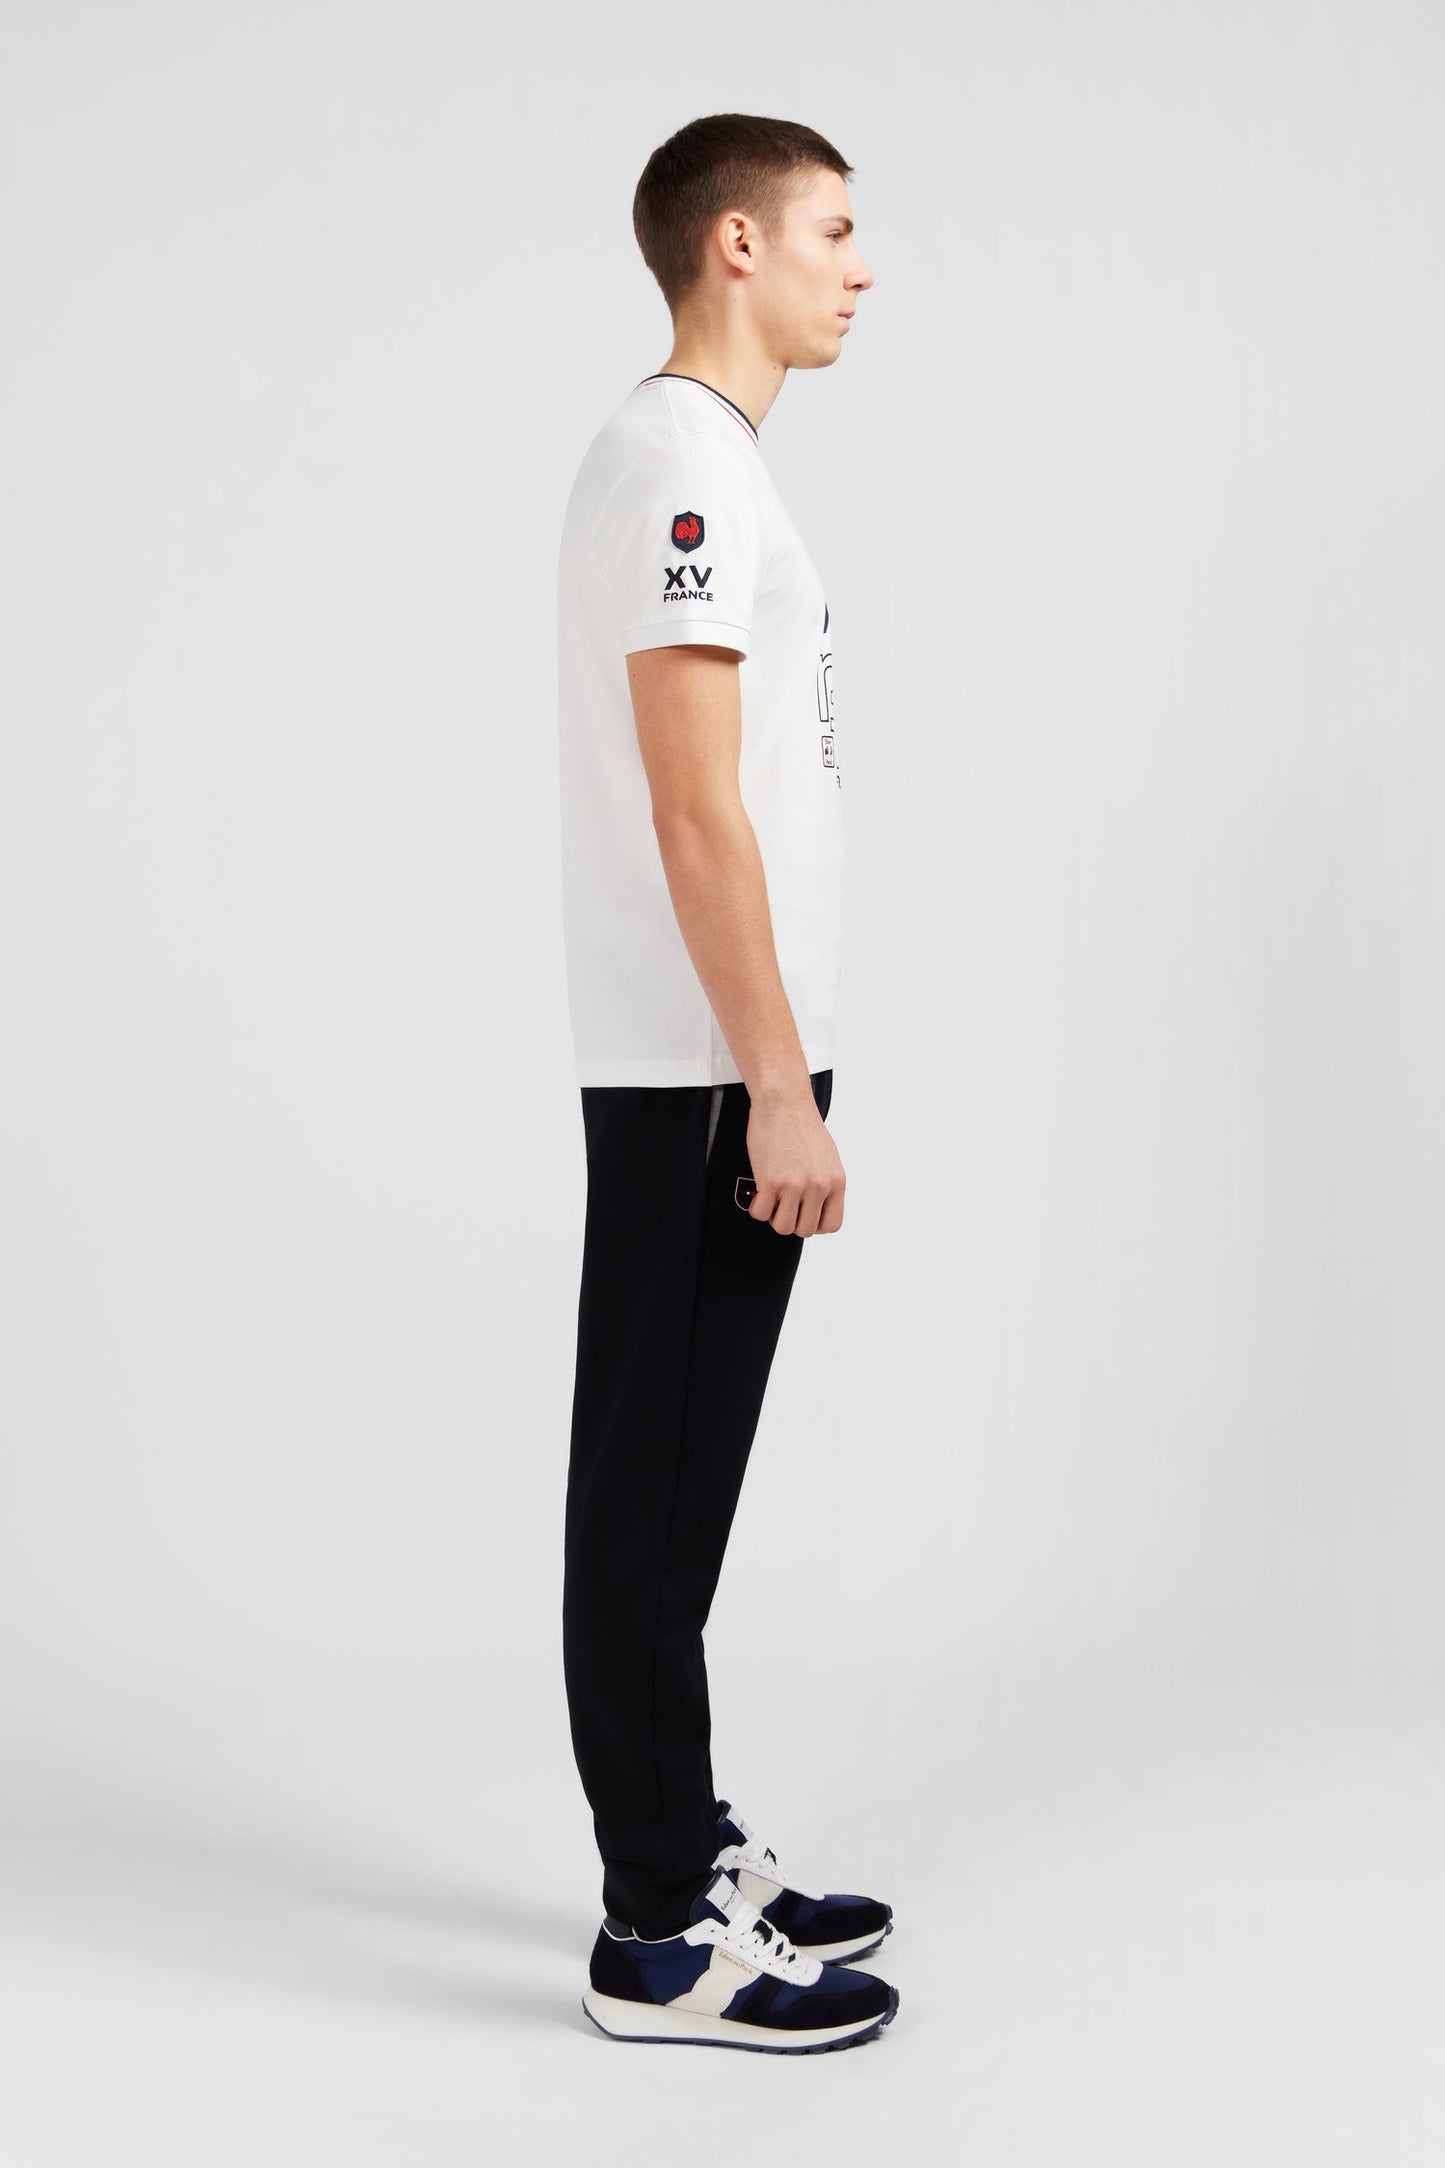 T-shirt à manches courtes blanc imprimé XV de France - Image 5